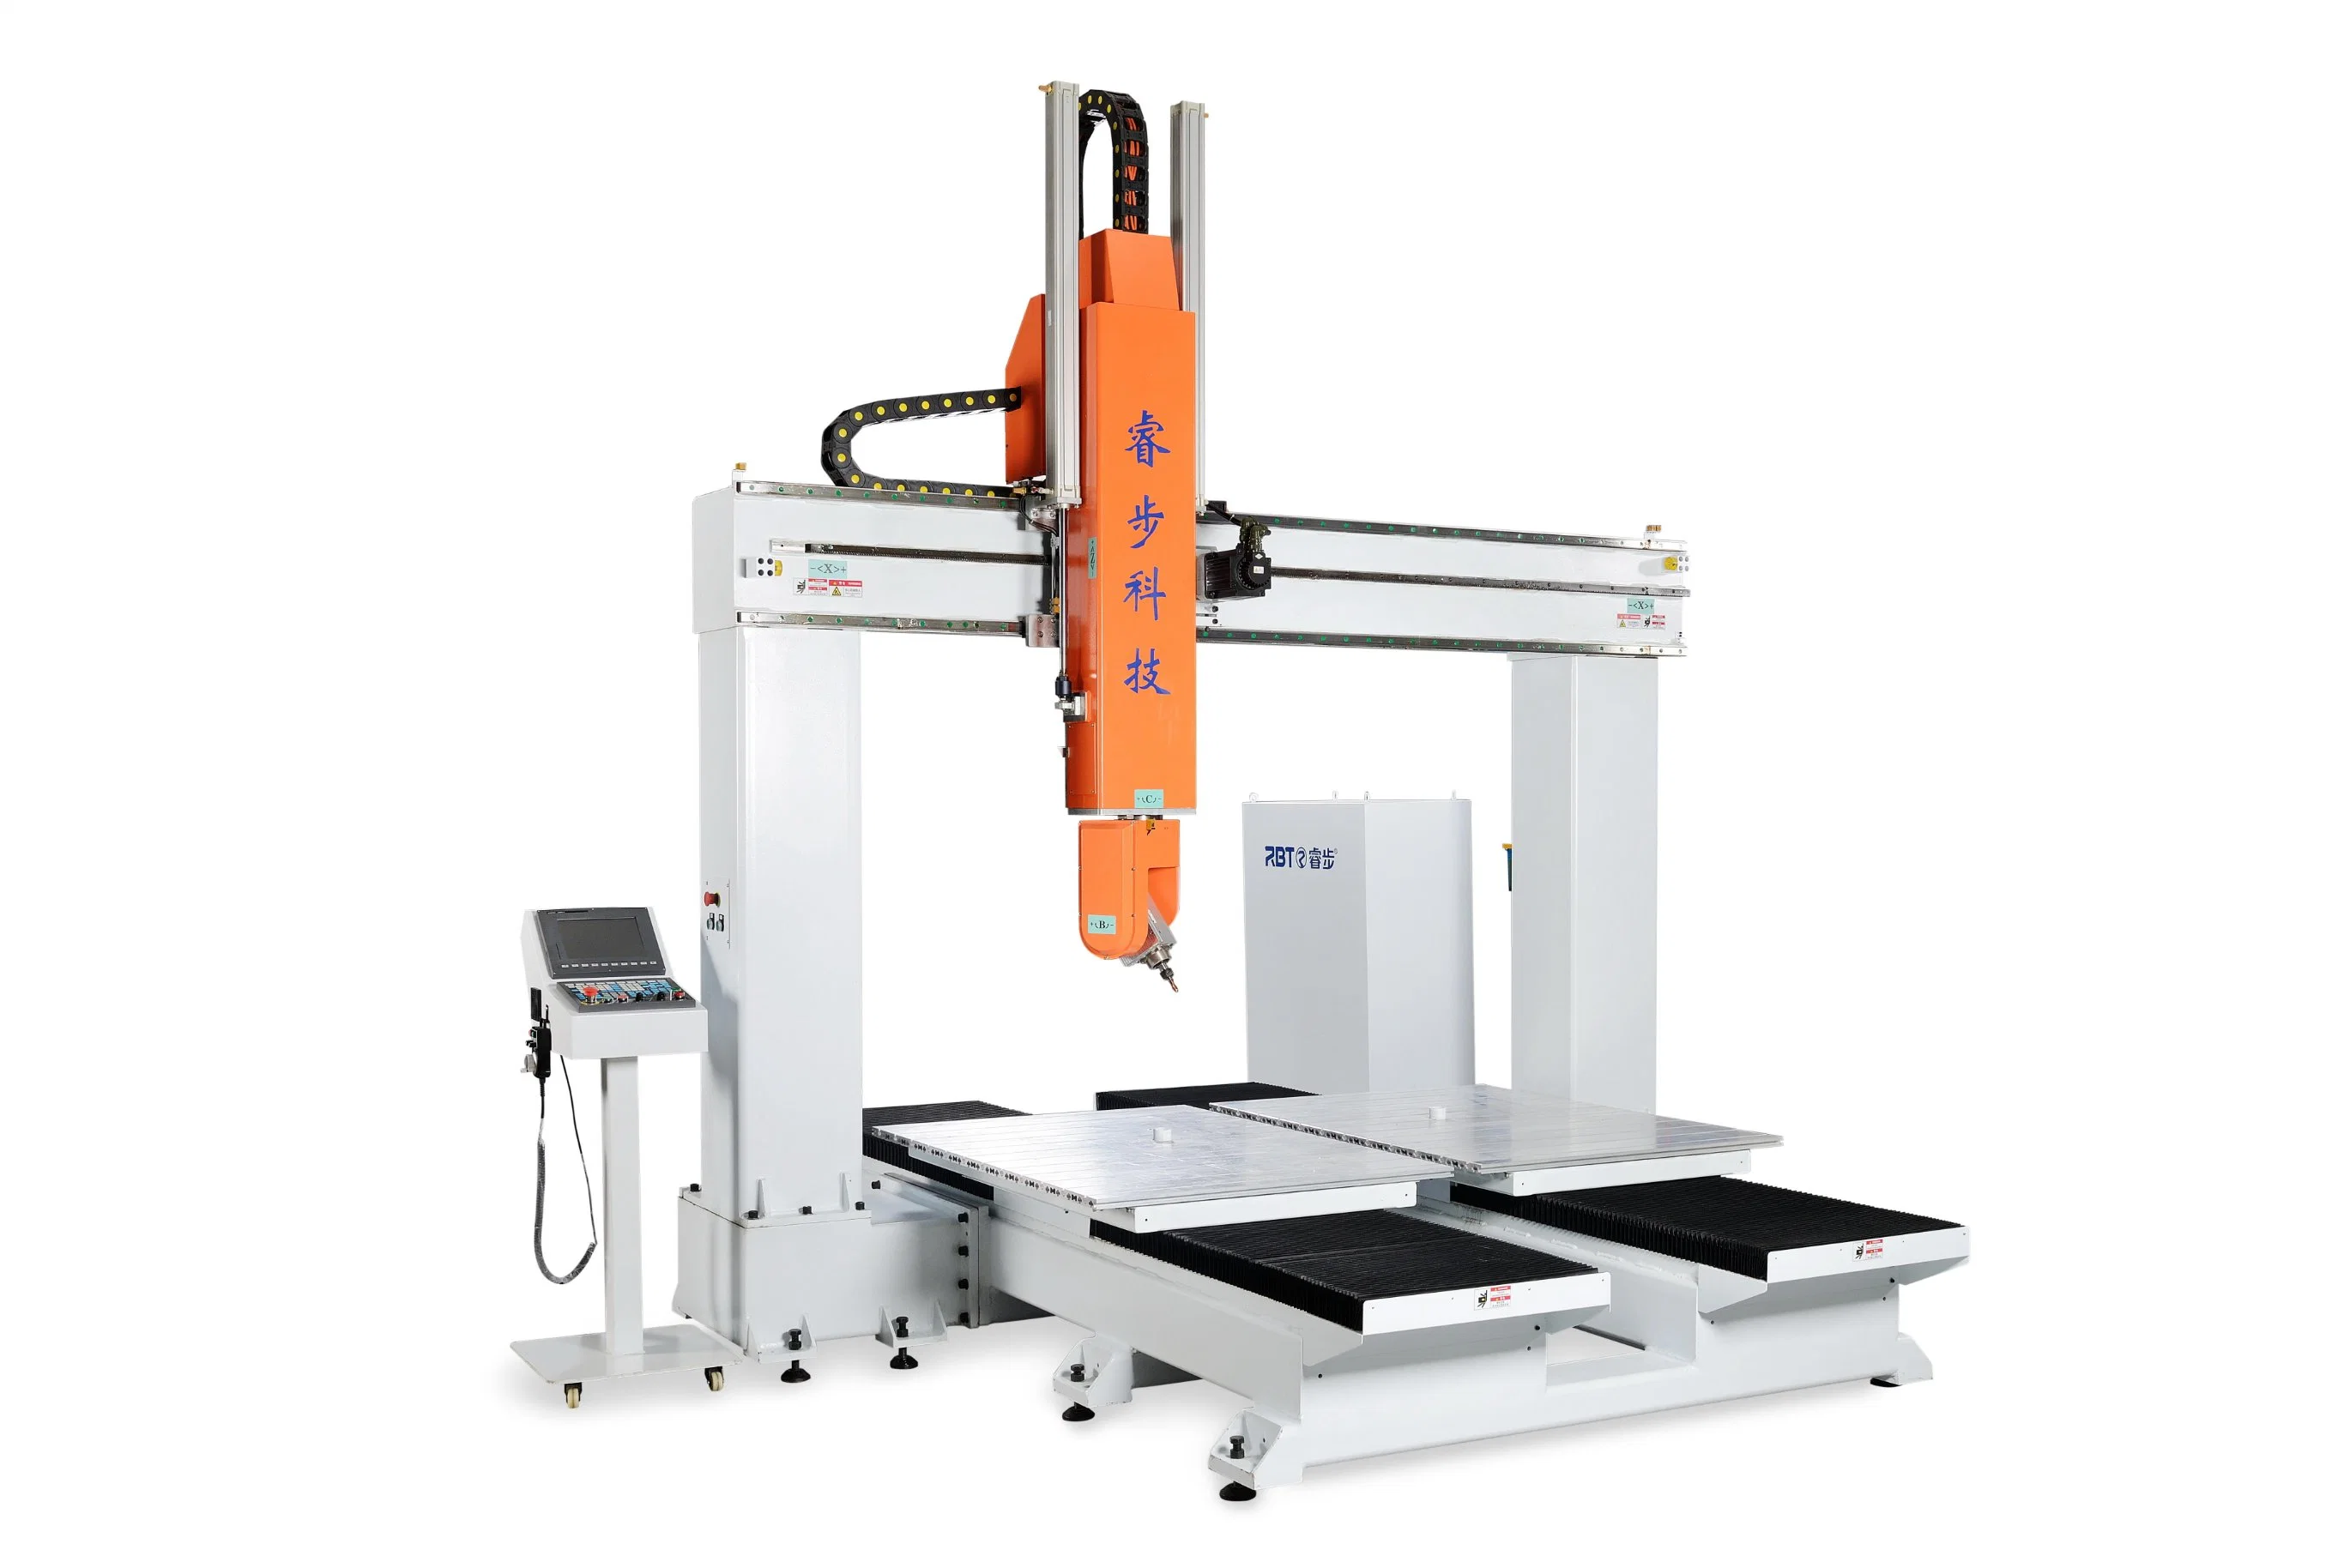 Las tablas de doble de trabajo CNC inteligente Taladros y corte de la máquina con cambiador automático de la hoja de industriales y de socorro tallado de corte artesanal